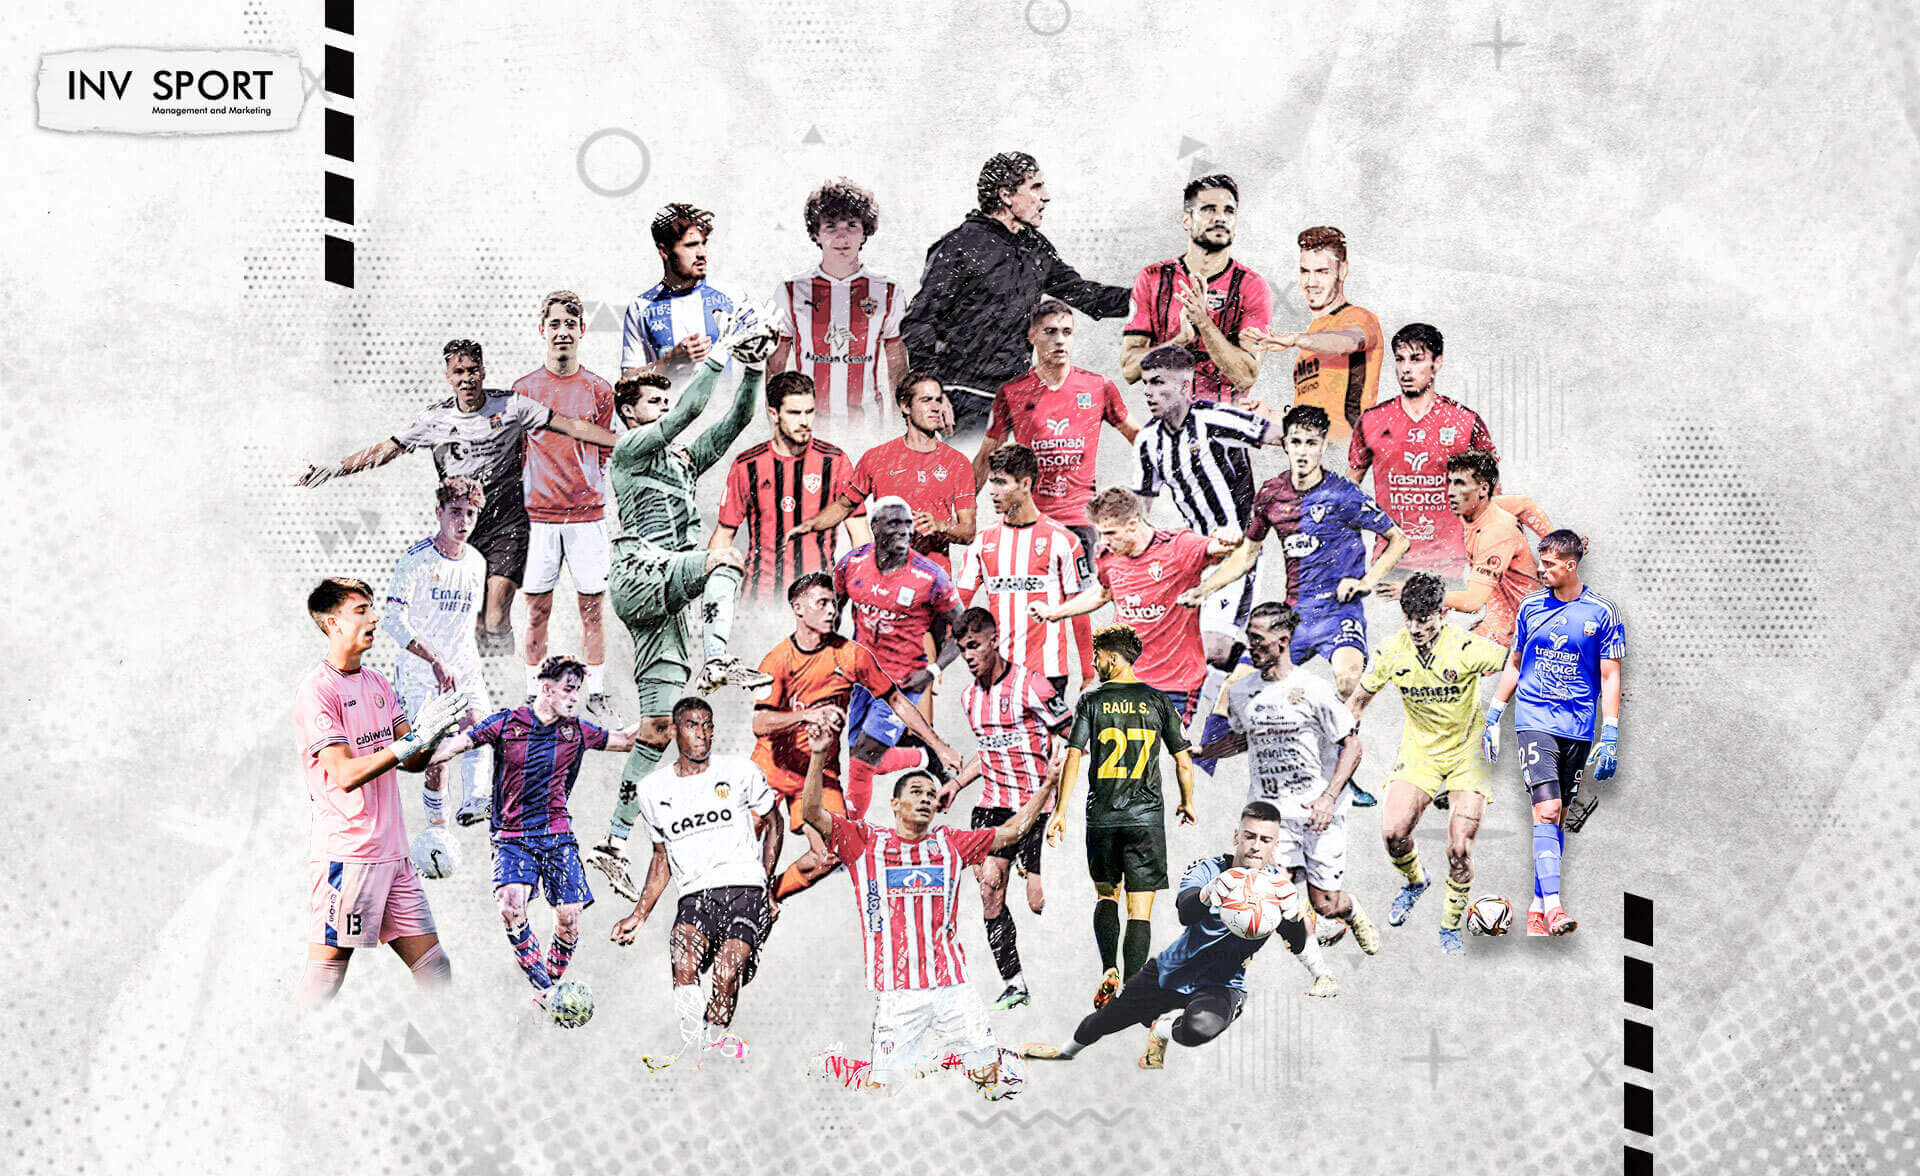 Mosaico con imágenes de jugadores profesionales de INVsport.